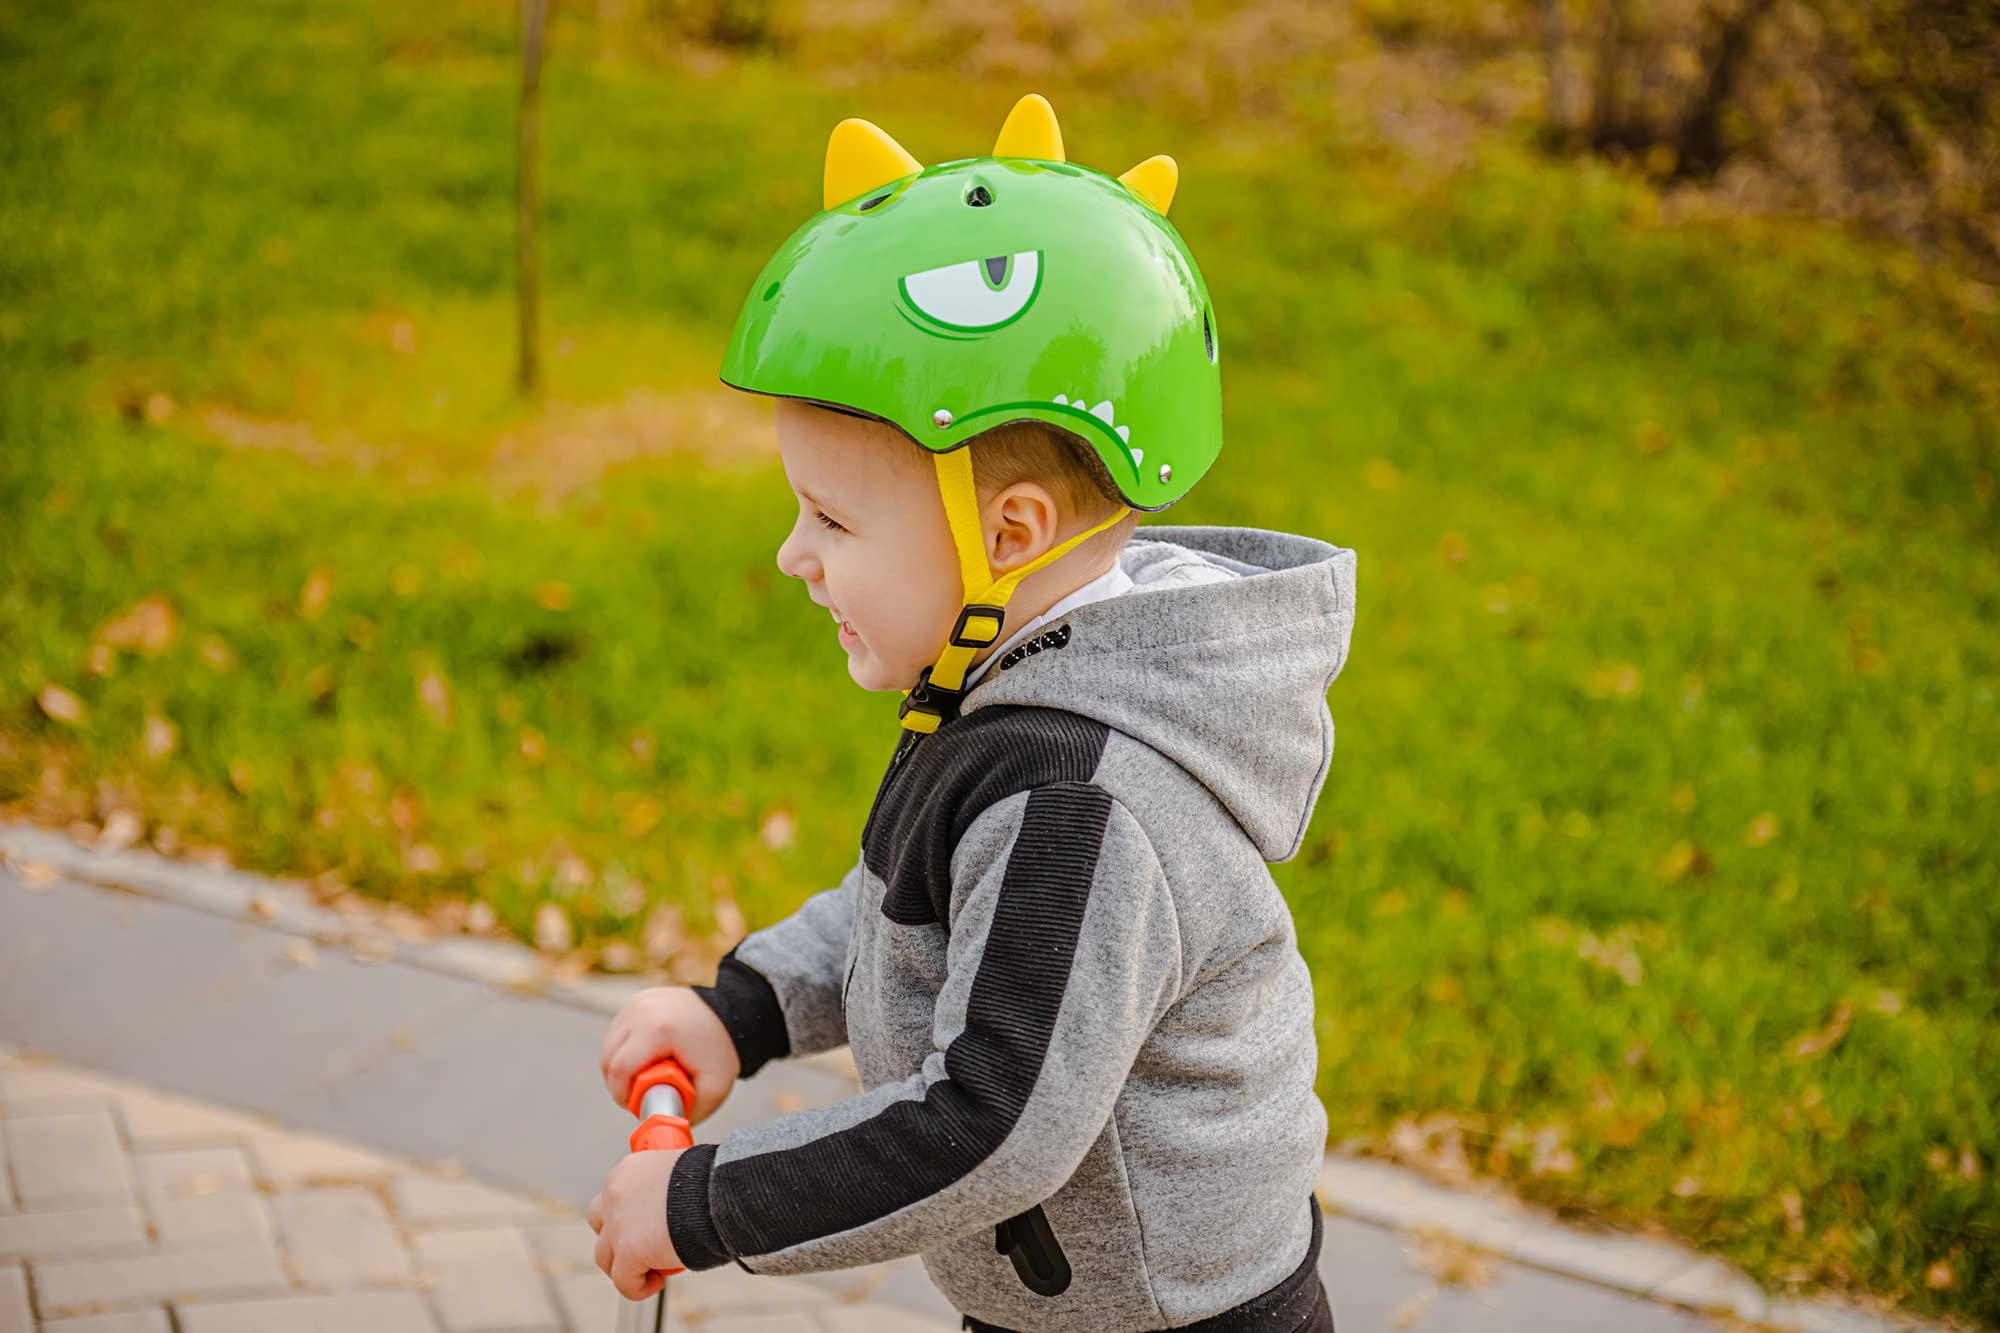 RoyalBaby Kids Bike Helmet Toddler to Youth Sizes for Boys Girls Dinosaur Helmet Green Dino Helmets for Multi-Sport